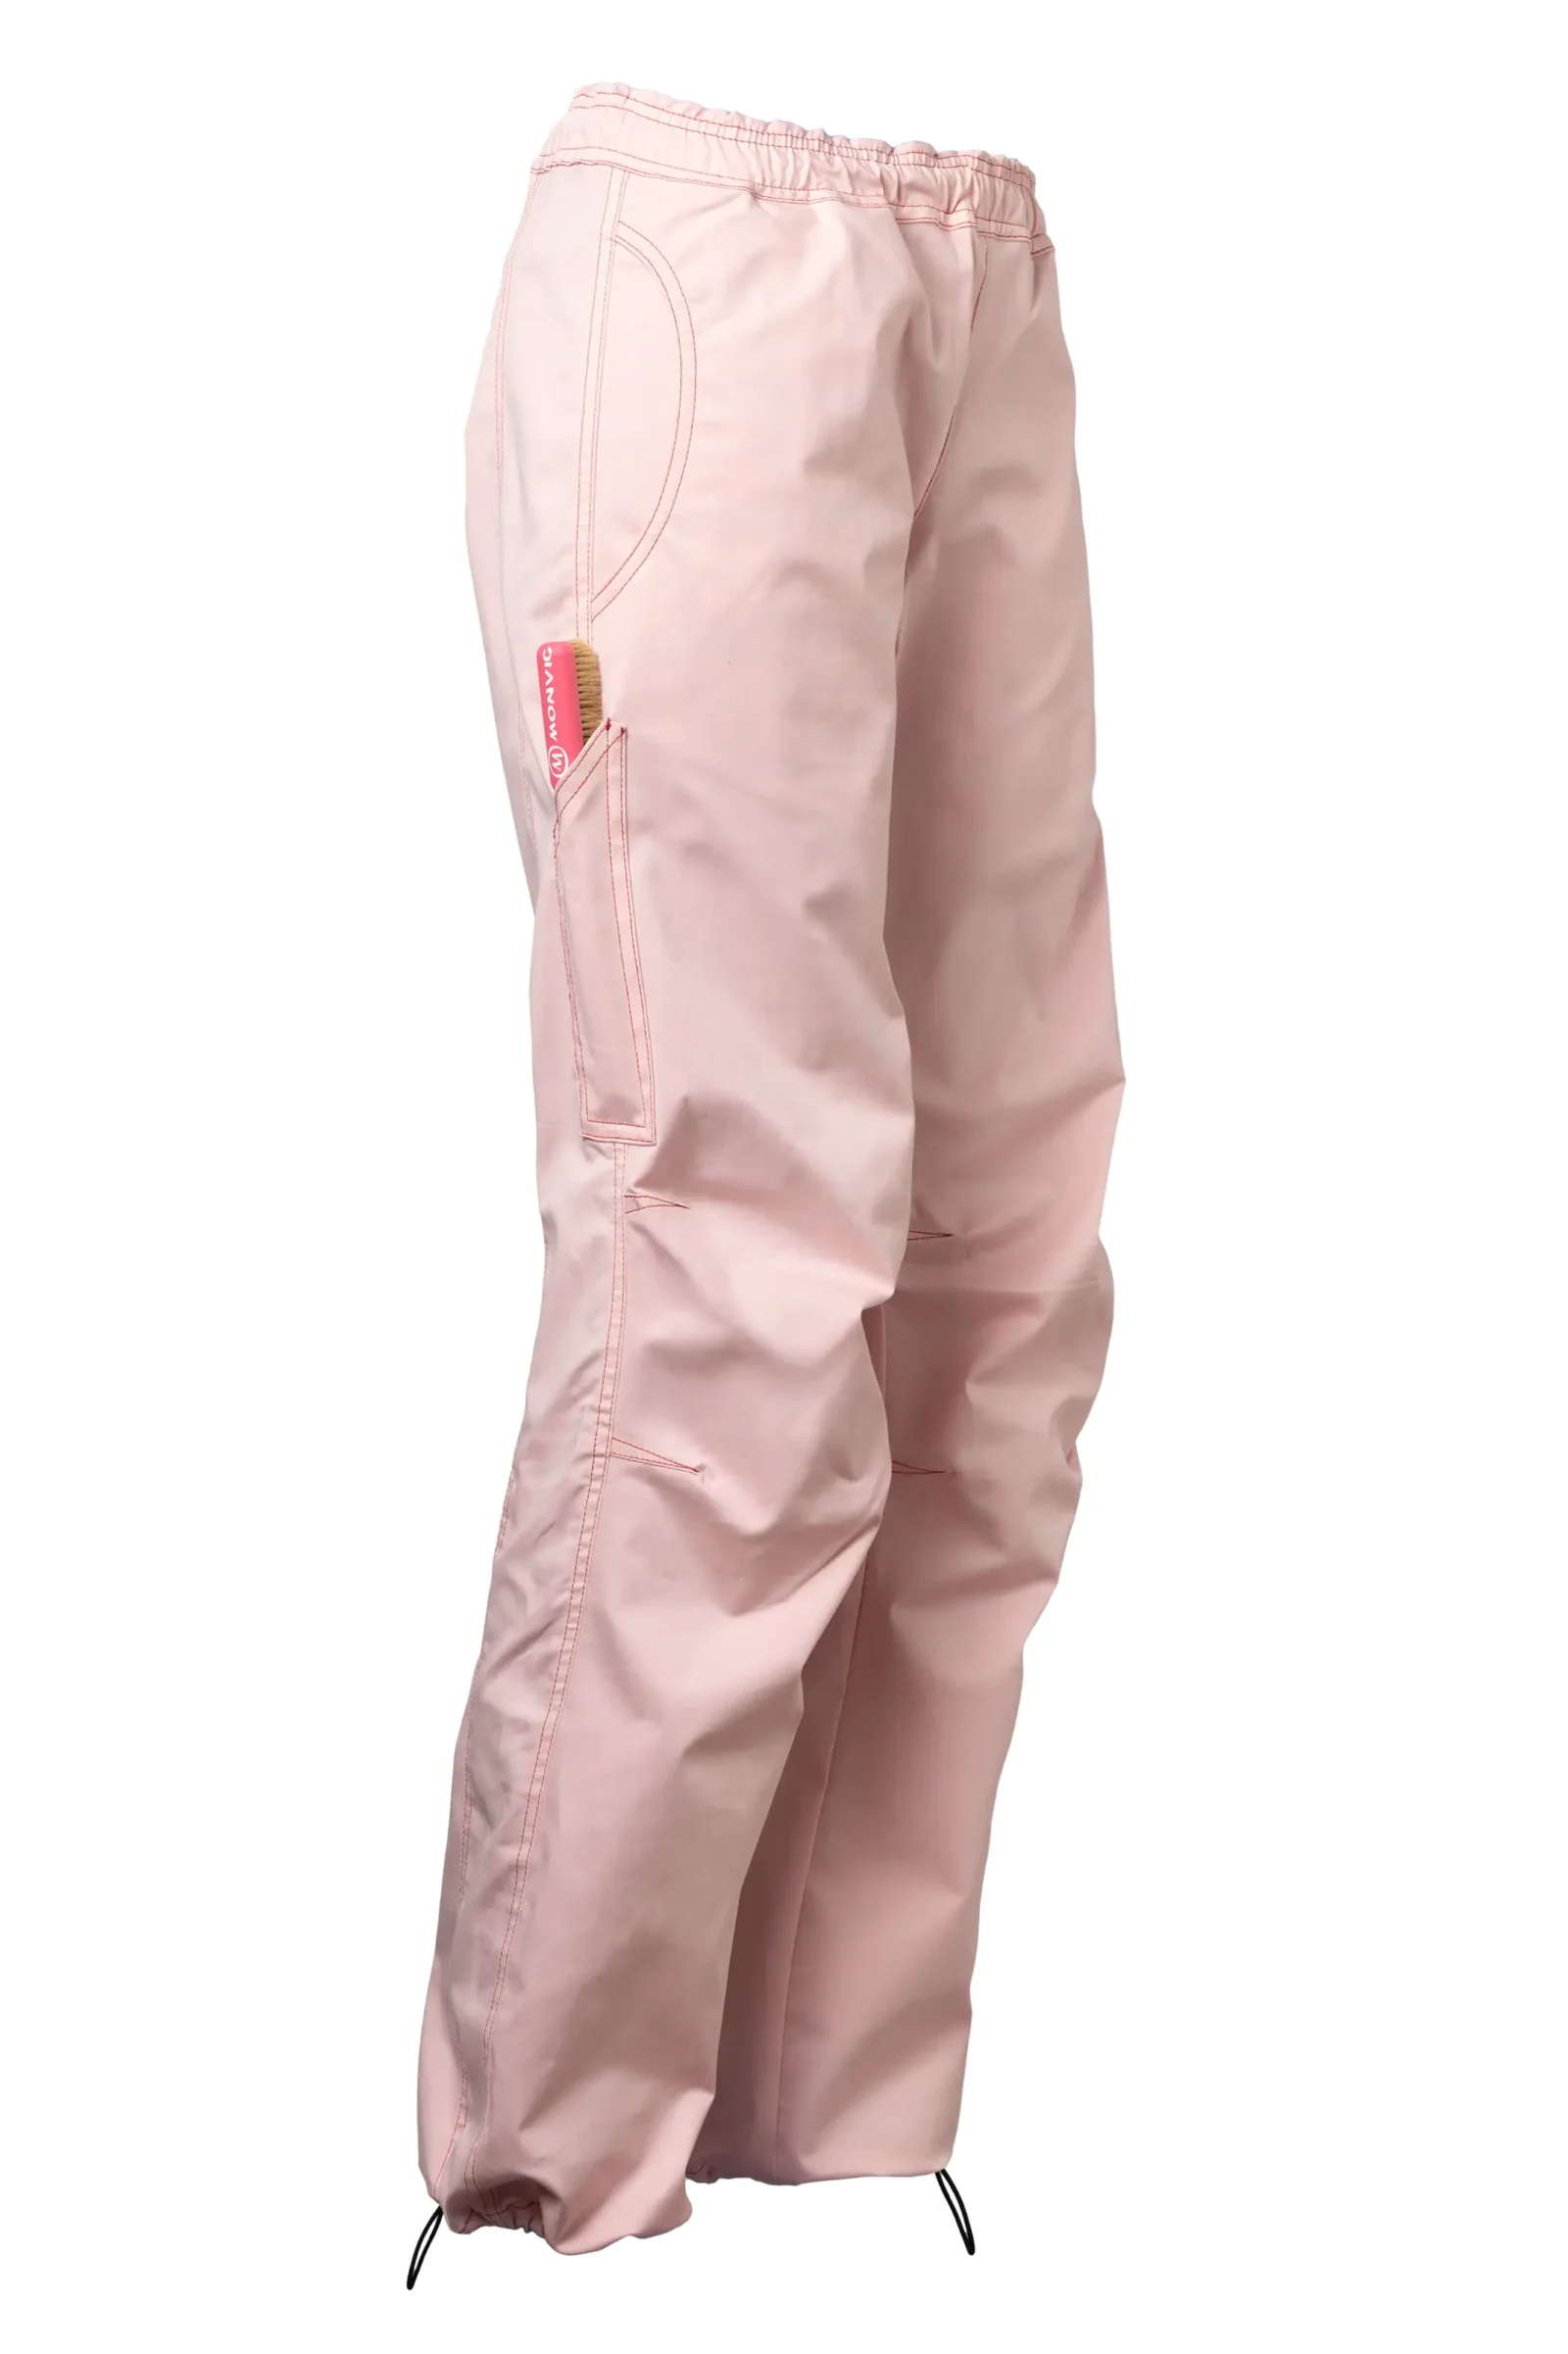 Pantalon escalade femme - coton stretch rose clair - VIOLET MONVIC